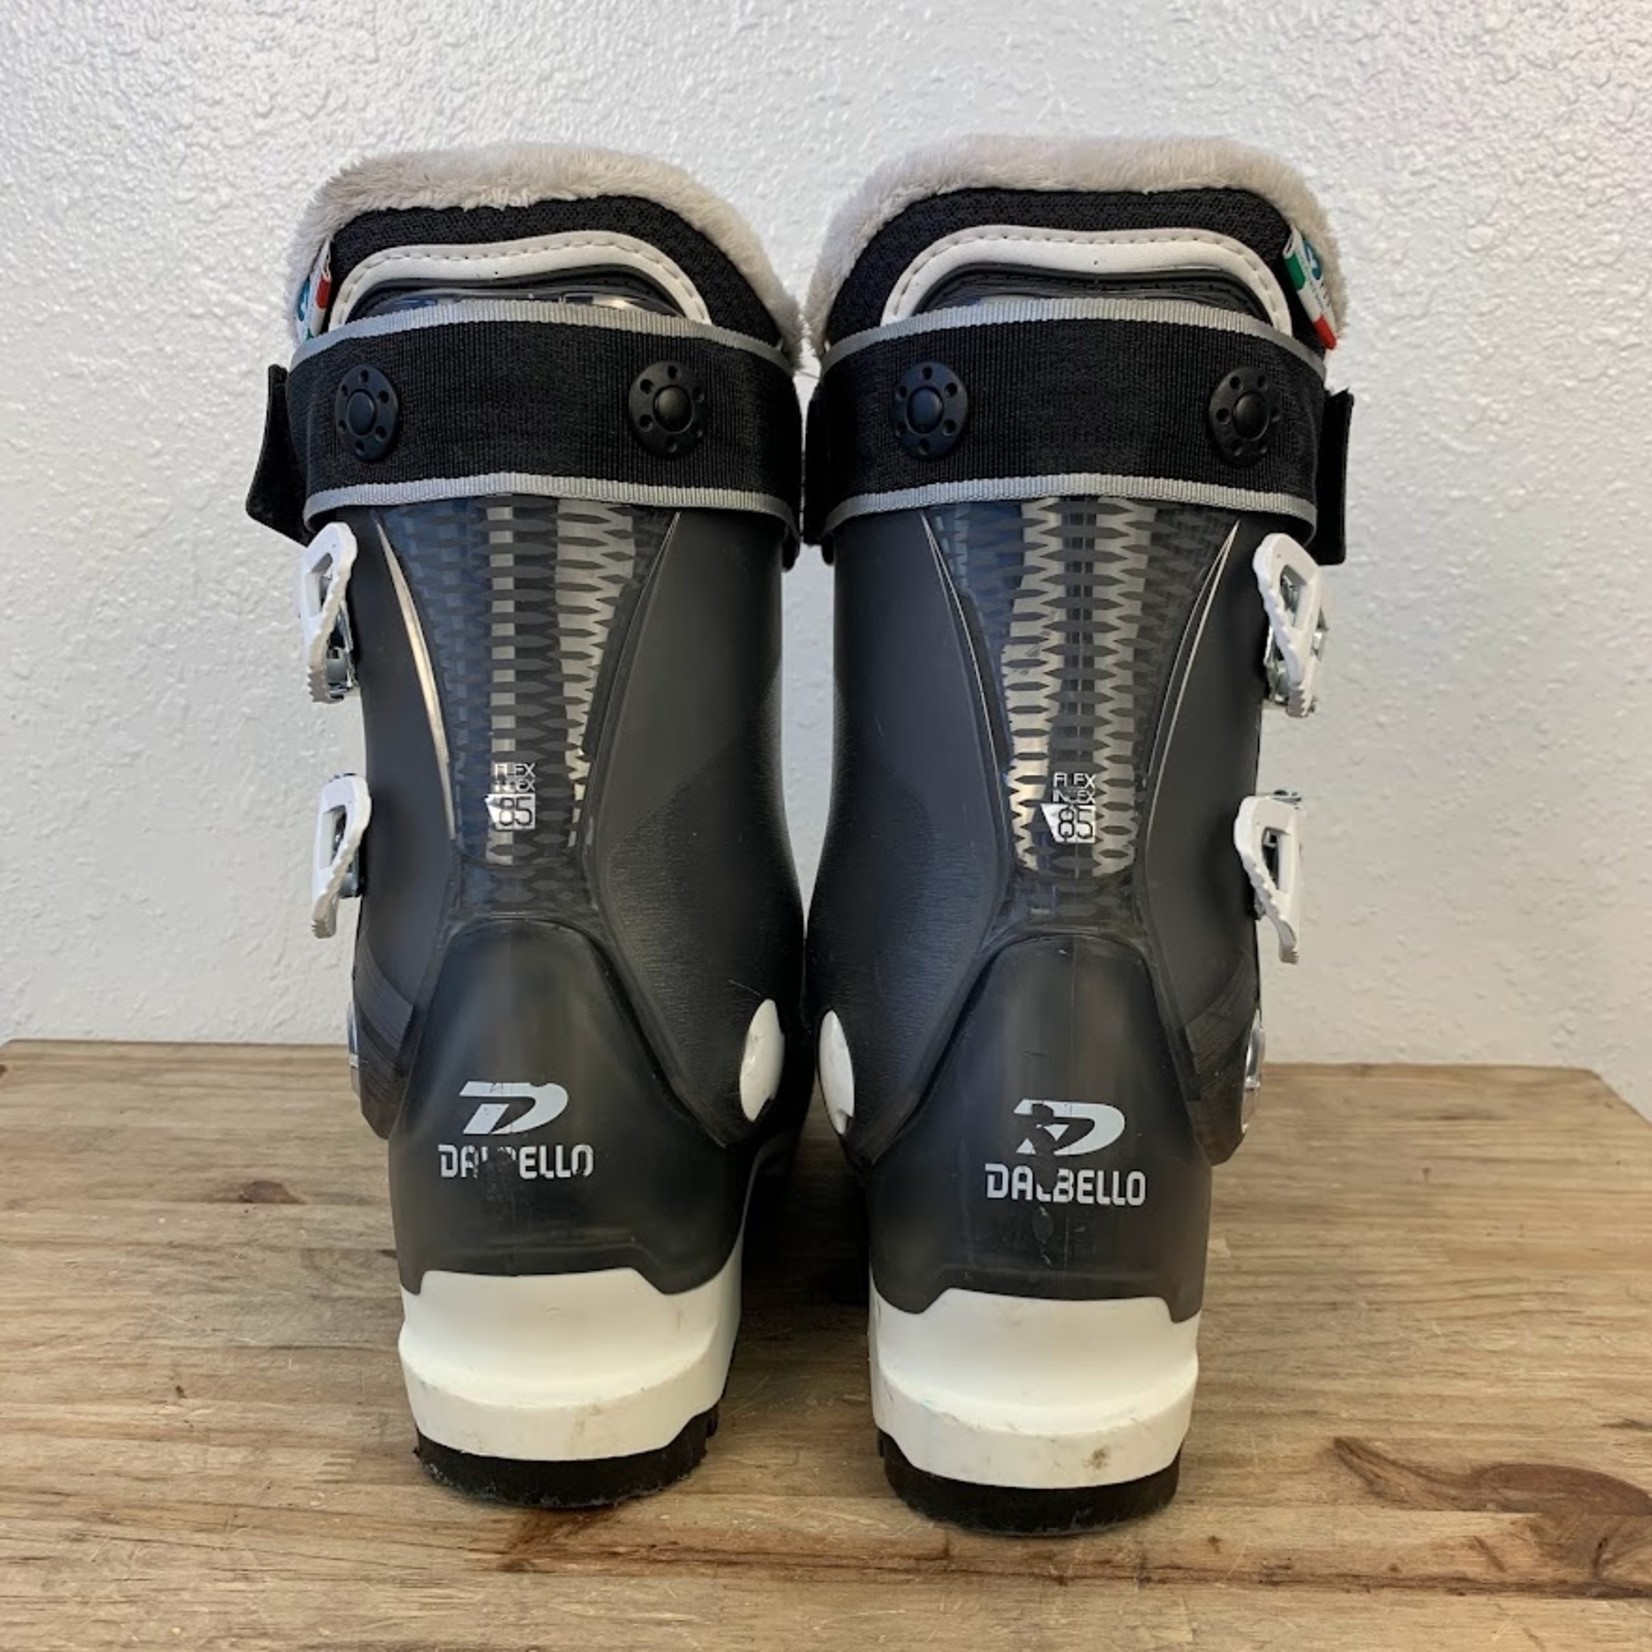 Dalbello Avanti W 85 Ski Boots, Size 22.5